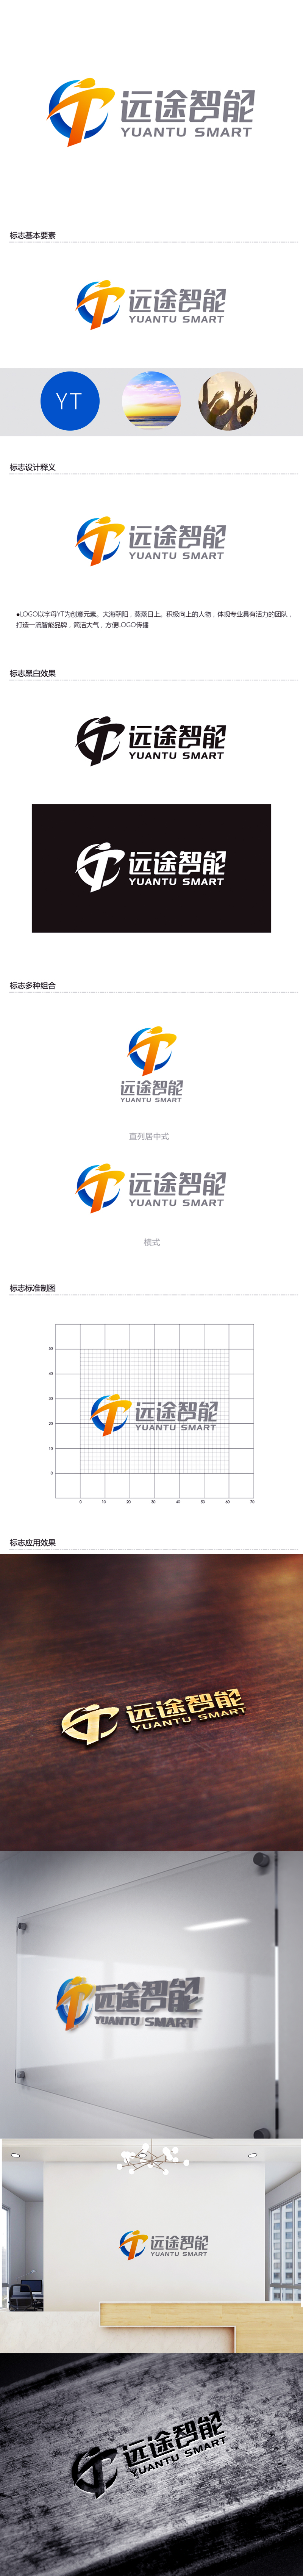 黄安悦的江苏远途智能装配房有限公司logo设计